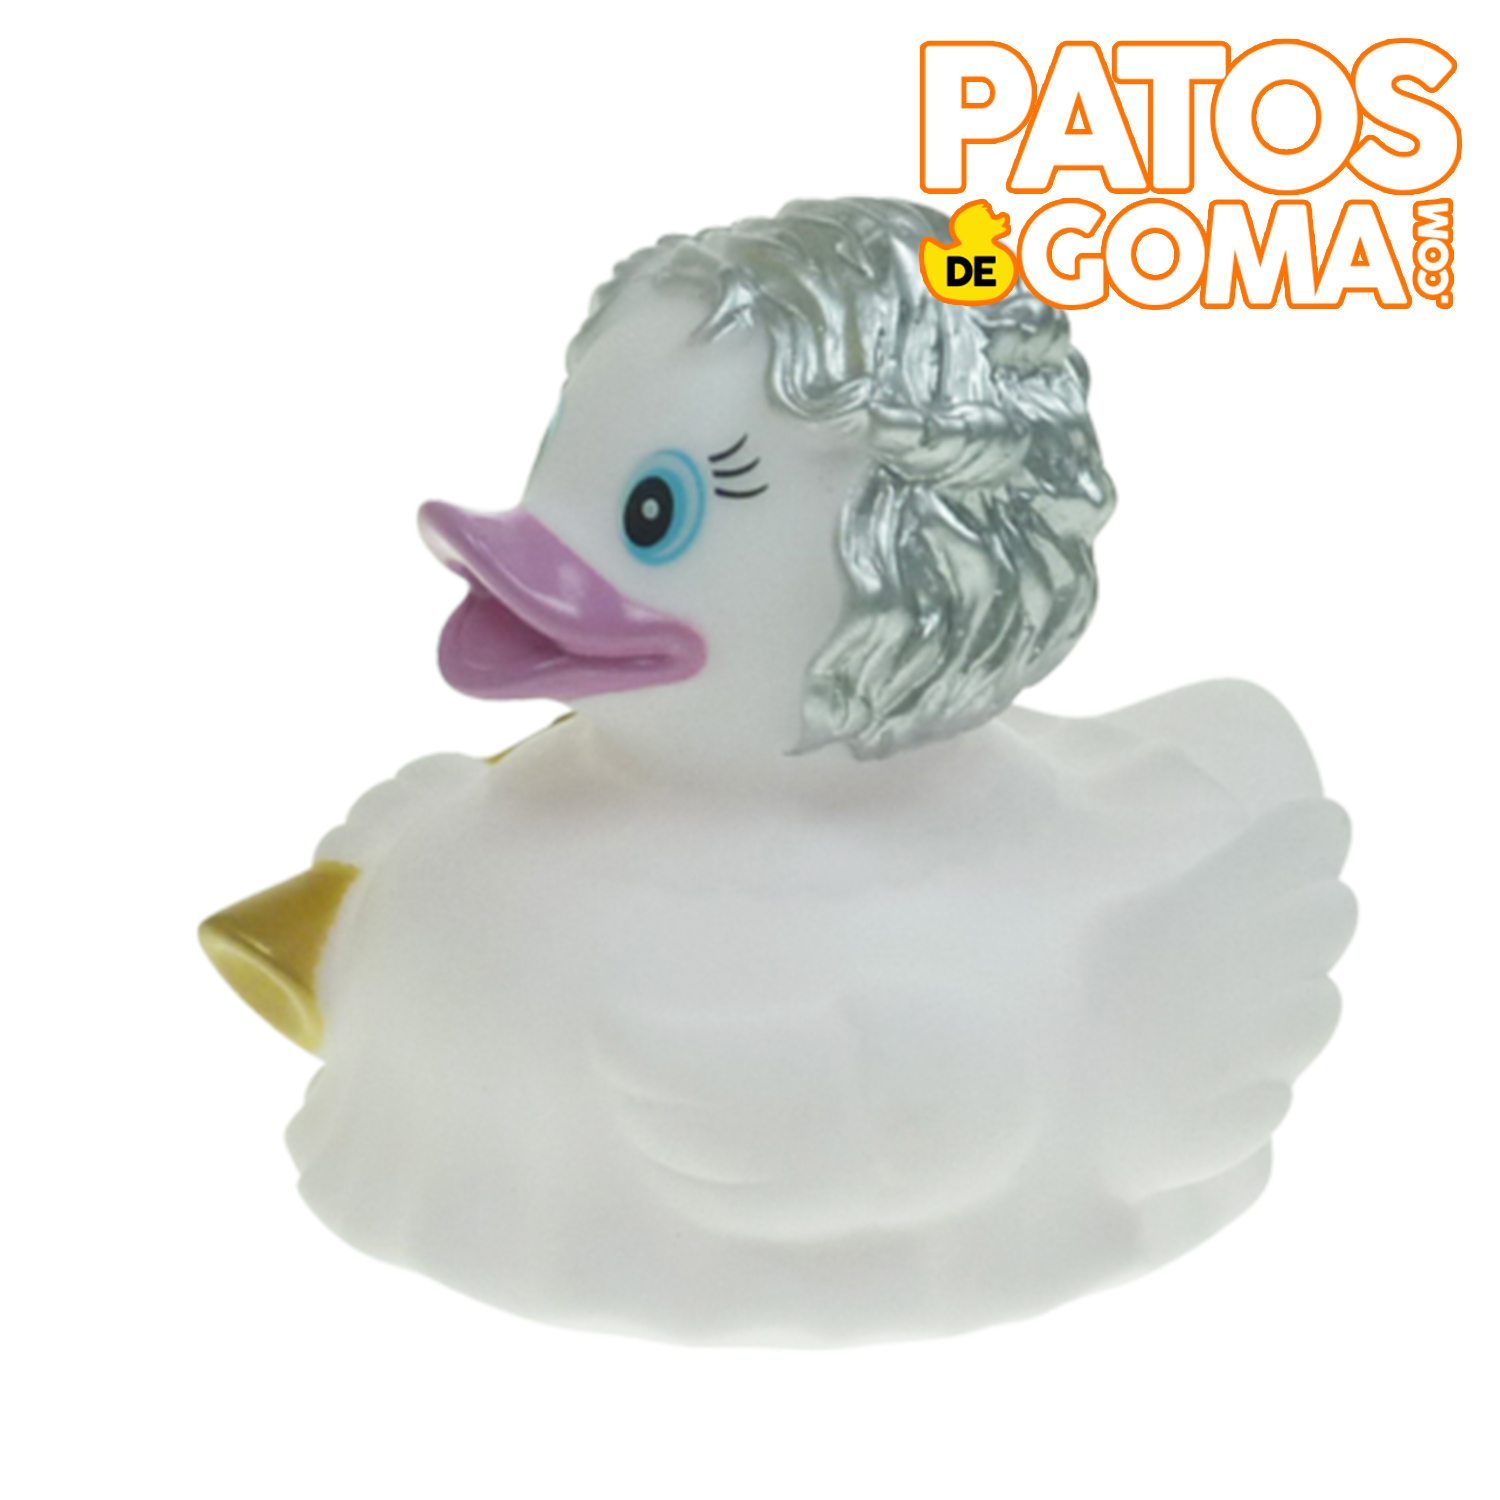 Patos de goma CELEBRACIONES archivos - PatosdeGoma.com